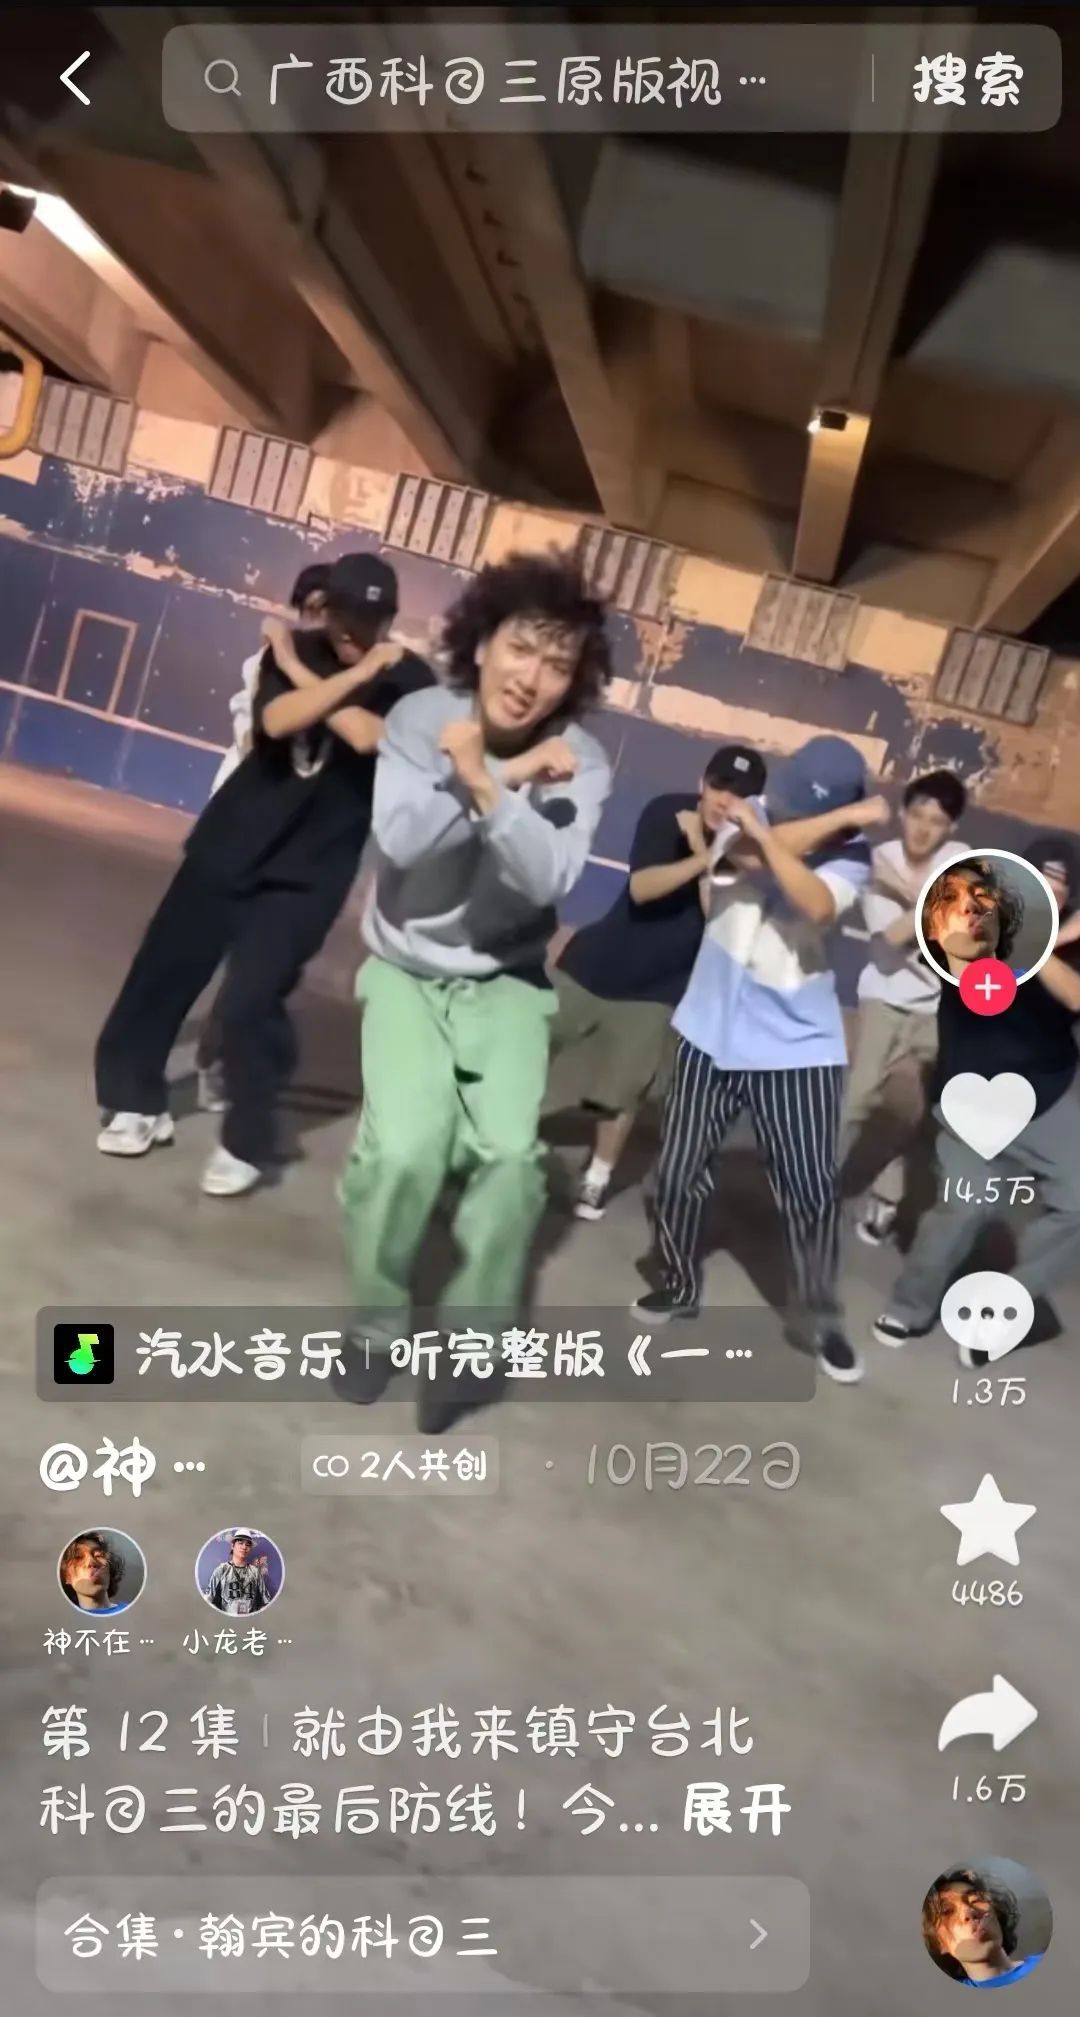 台湾年轻人加入“科目三”斗舞